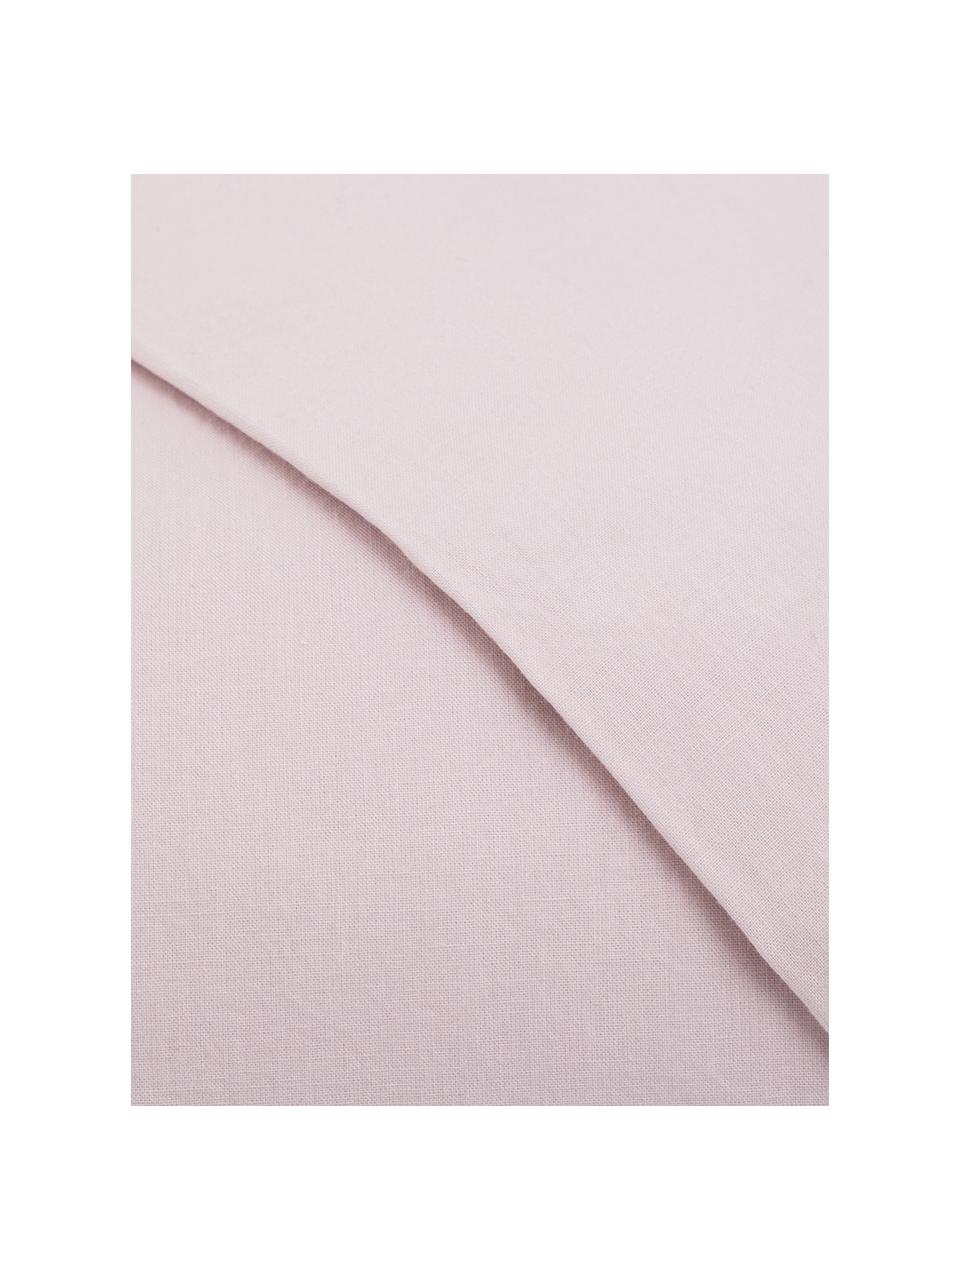 Parure copripiumino in cotone effetto stone washed Velle, Tessuto: cotone ranforce, Fronte e retro: rosa chiaro, 155 x 200 cm + 1 federa 50 x 80 cm